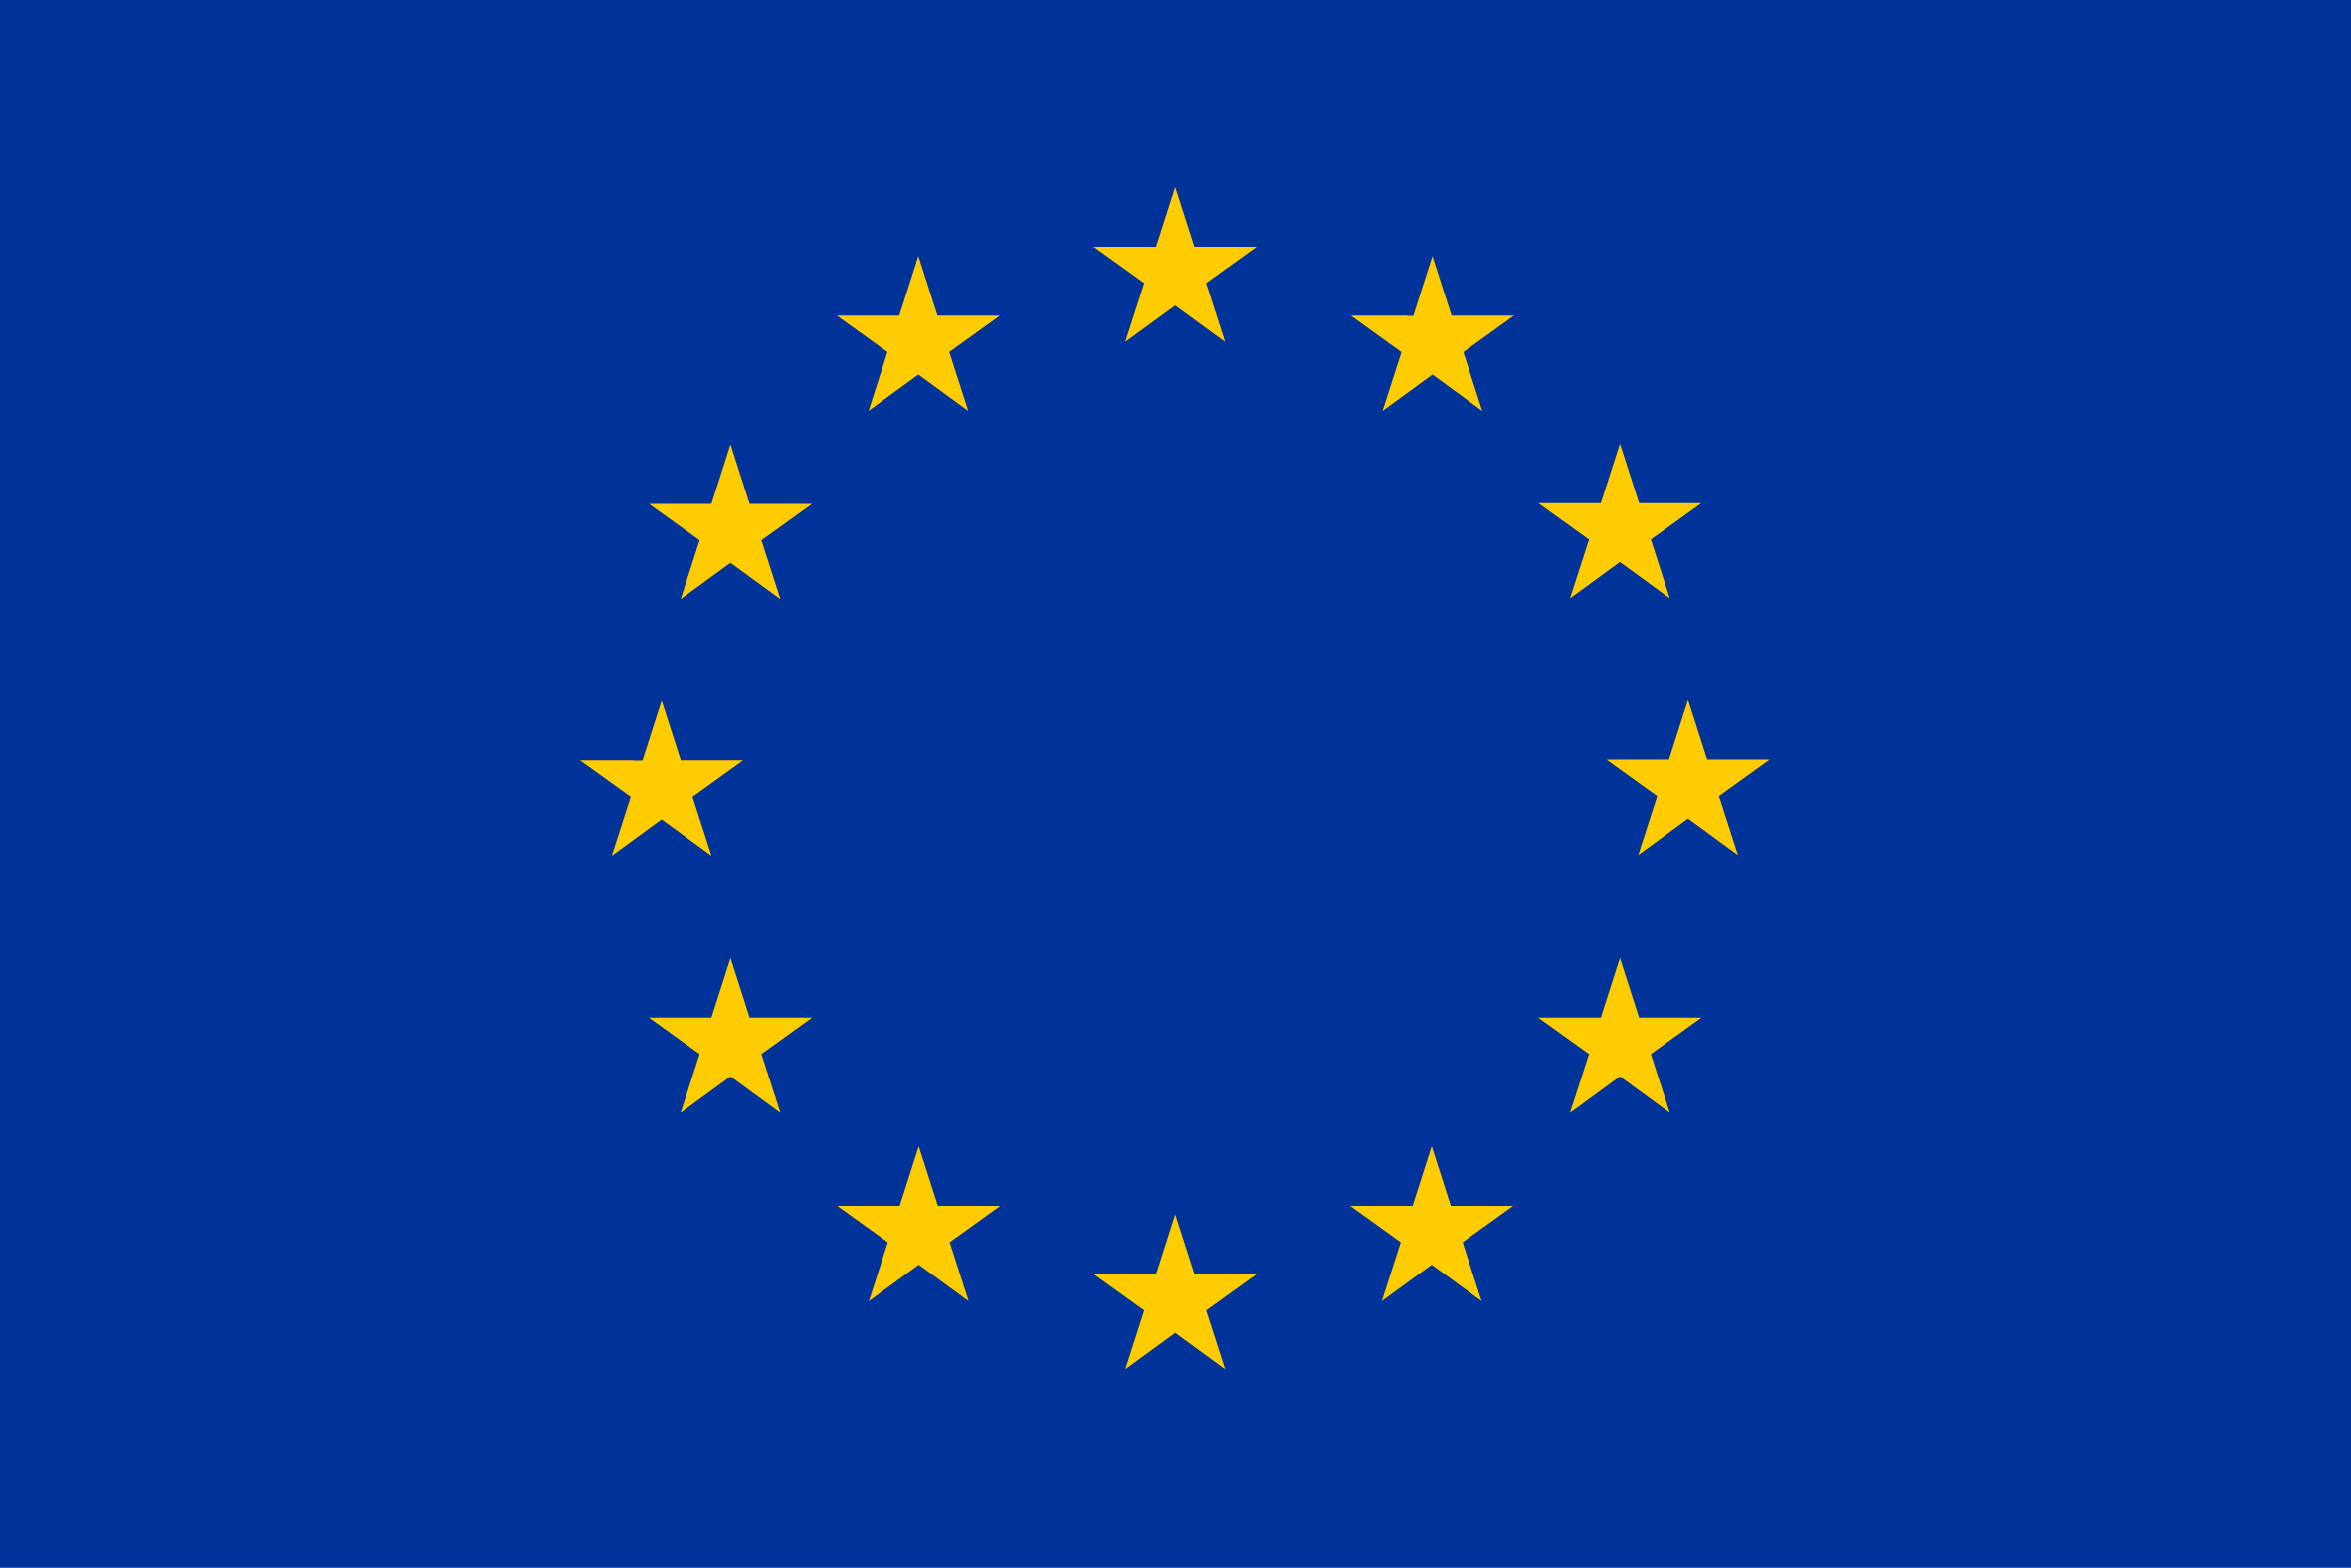 ../../_images/eu_flag.jpg